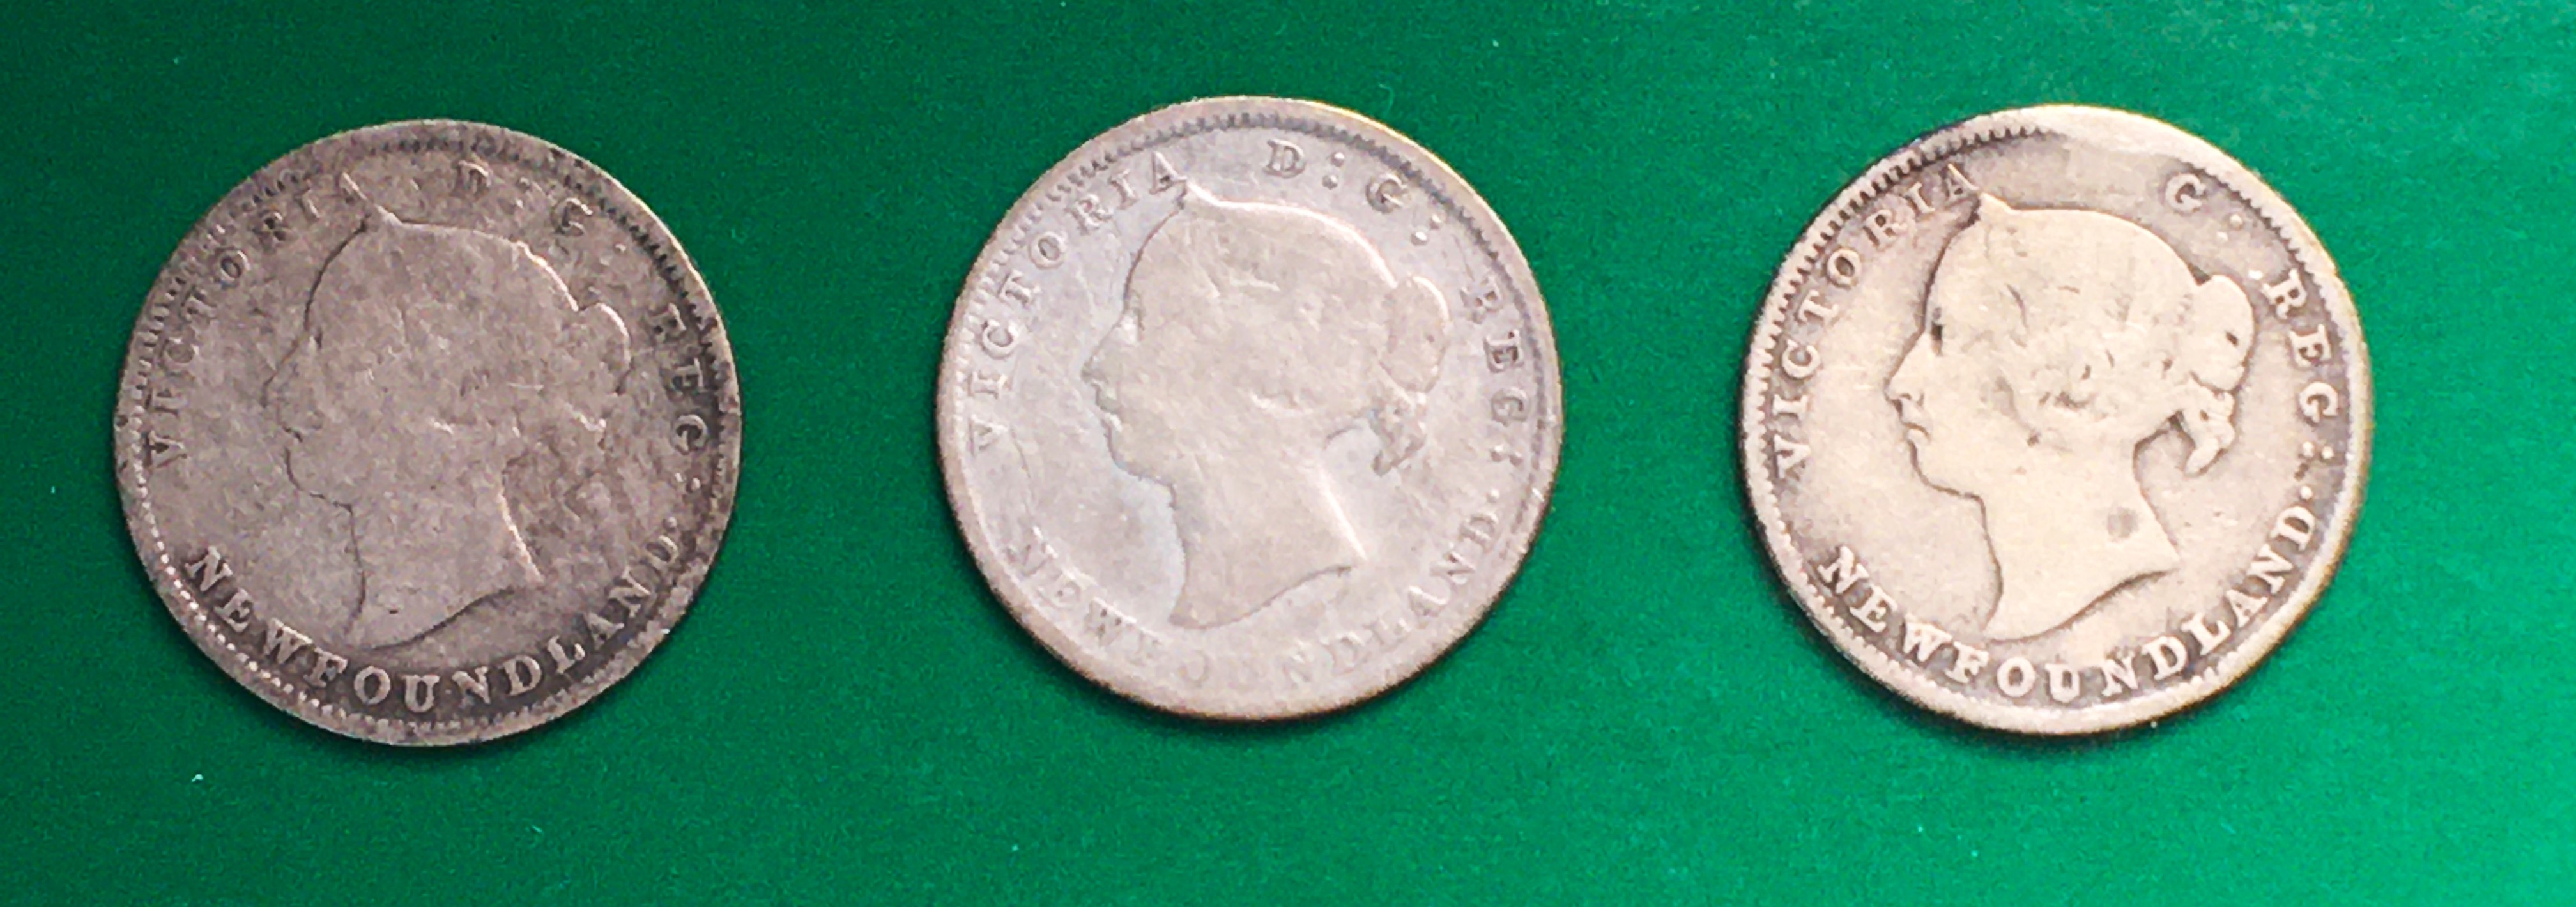 3 pièces 5 cents Terre-Neuve avers.JPG